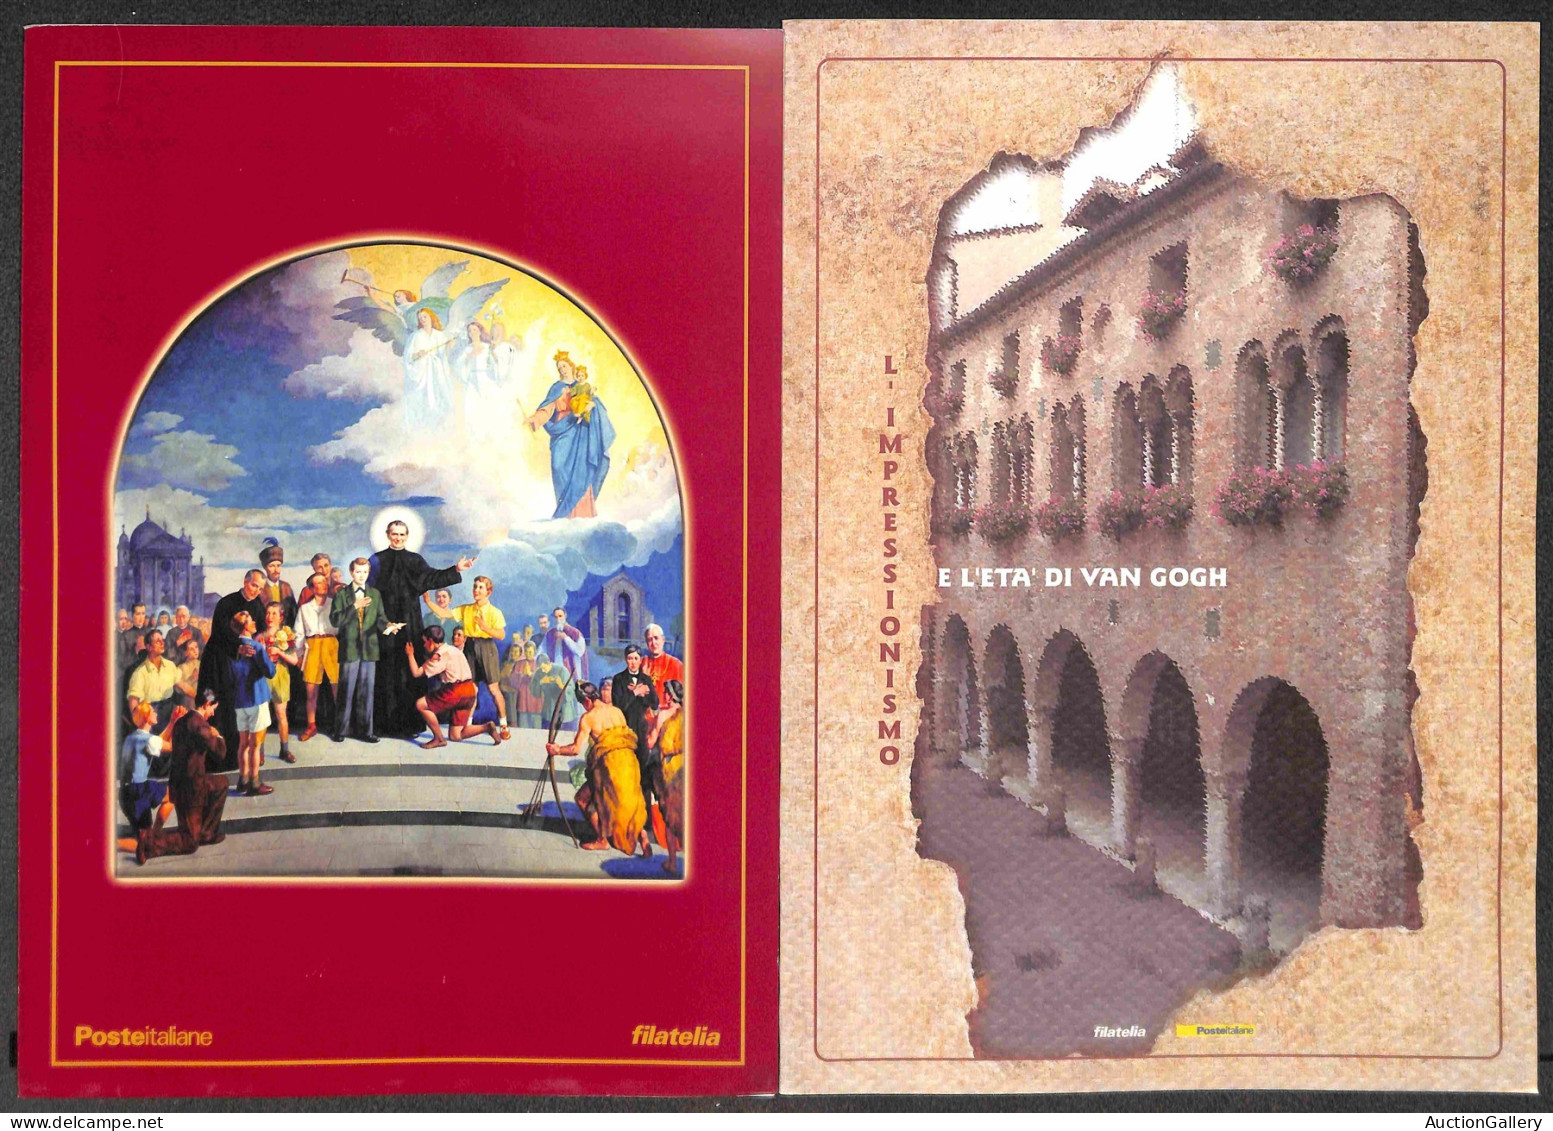 Lotti&Collezioni - Area Italiana - FOLDER FILATELICI POSTE ITALIANE - 1999/2003 - Collezione di 26 folder diversi - nota